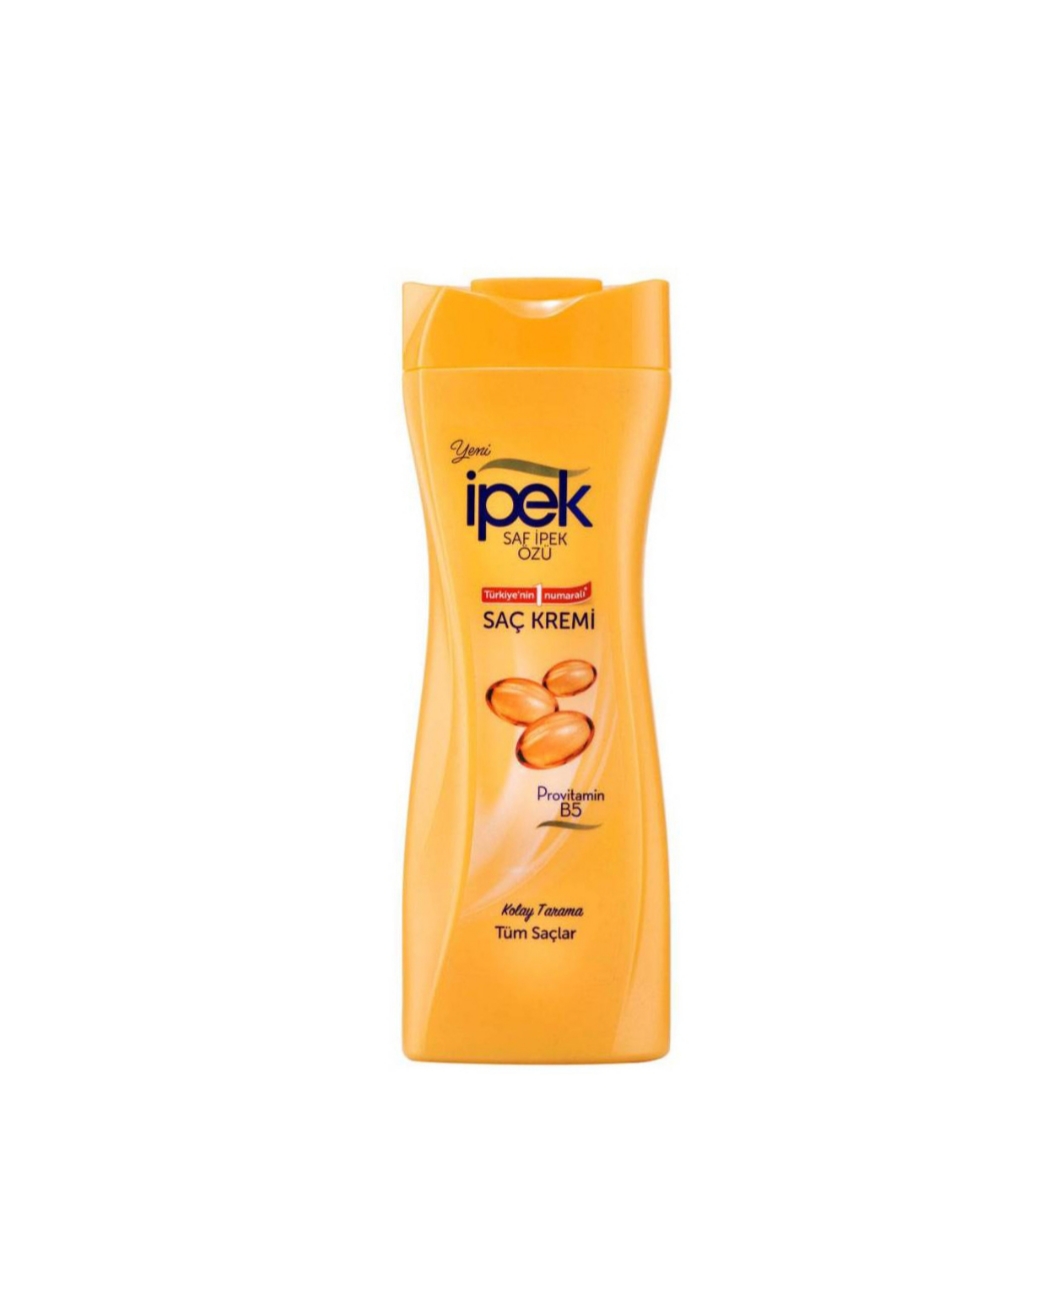 فراورده های حالت دهنده ،نرم کننده وتثبیت کننده آرایش مو (کرمها ، لوسیونها وروغنها) IPEK shampoo Hair Conditioner pro VB5 600ML